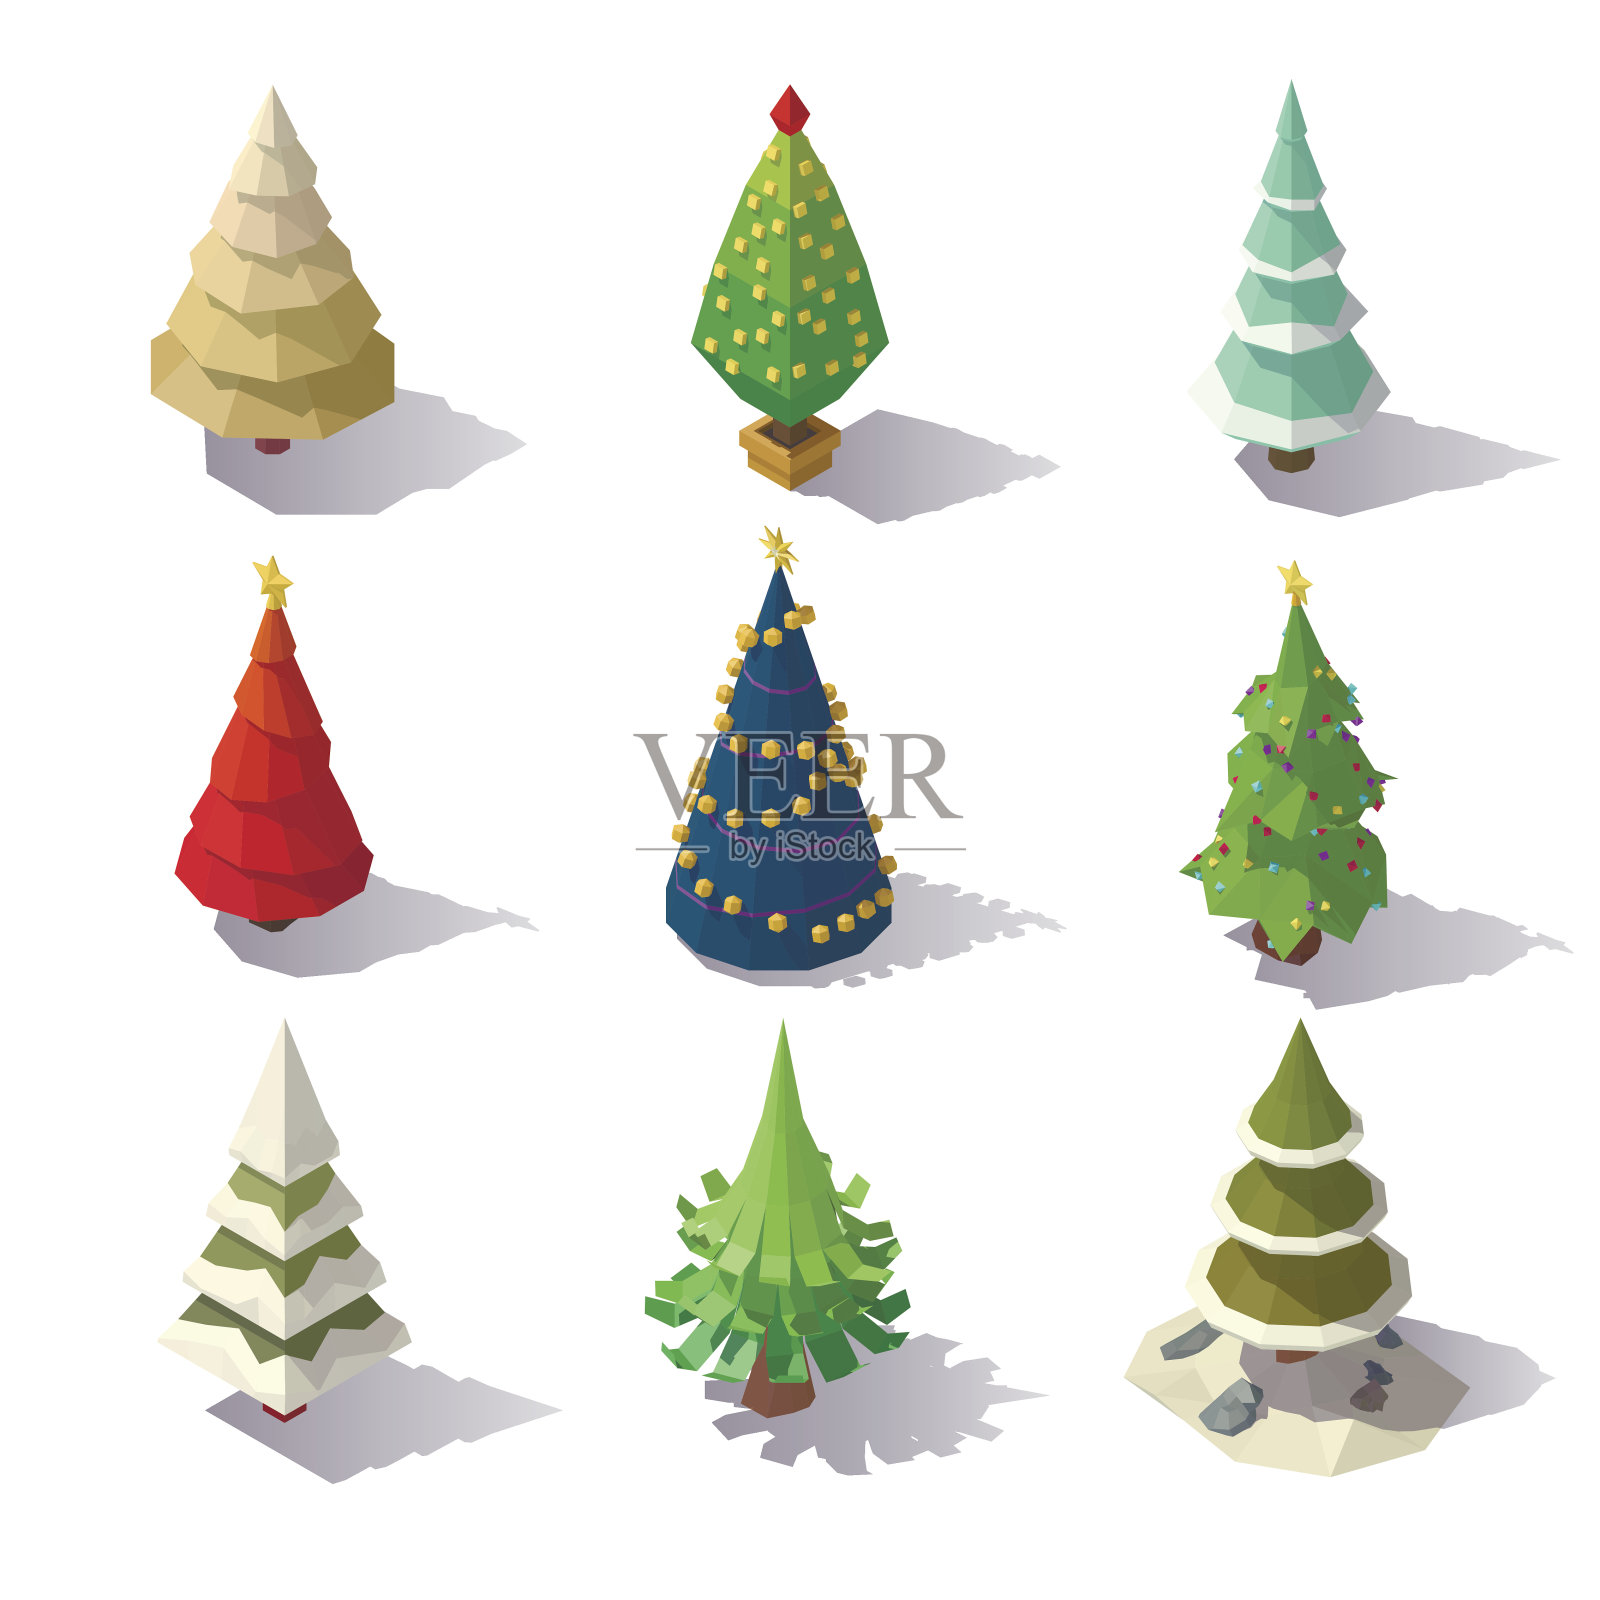 低聚圣诞树设计元素图片